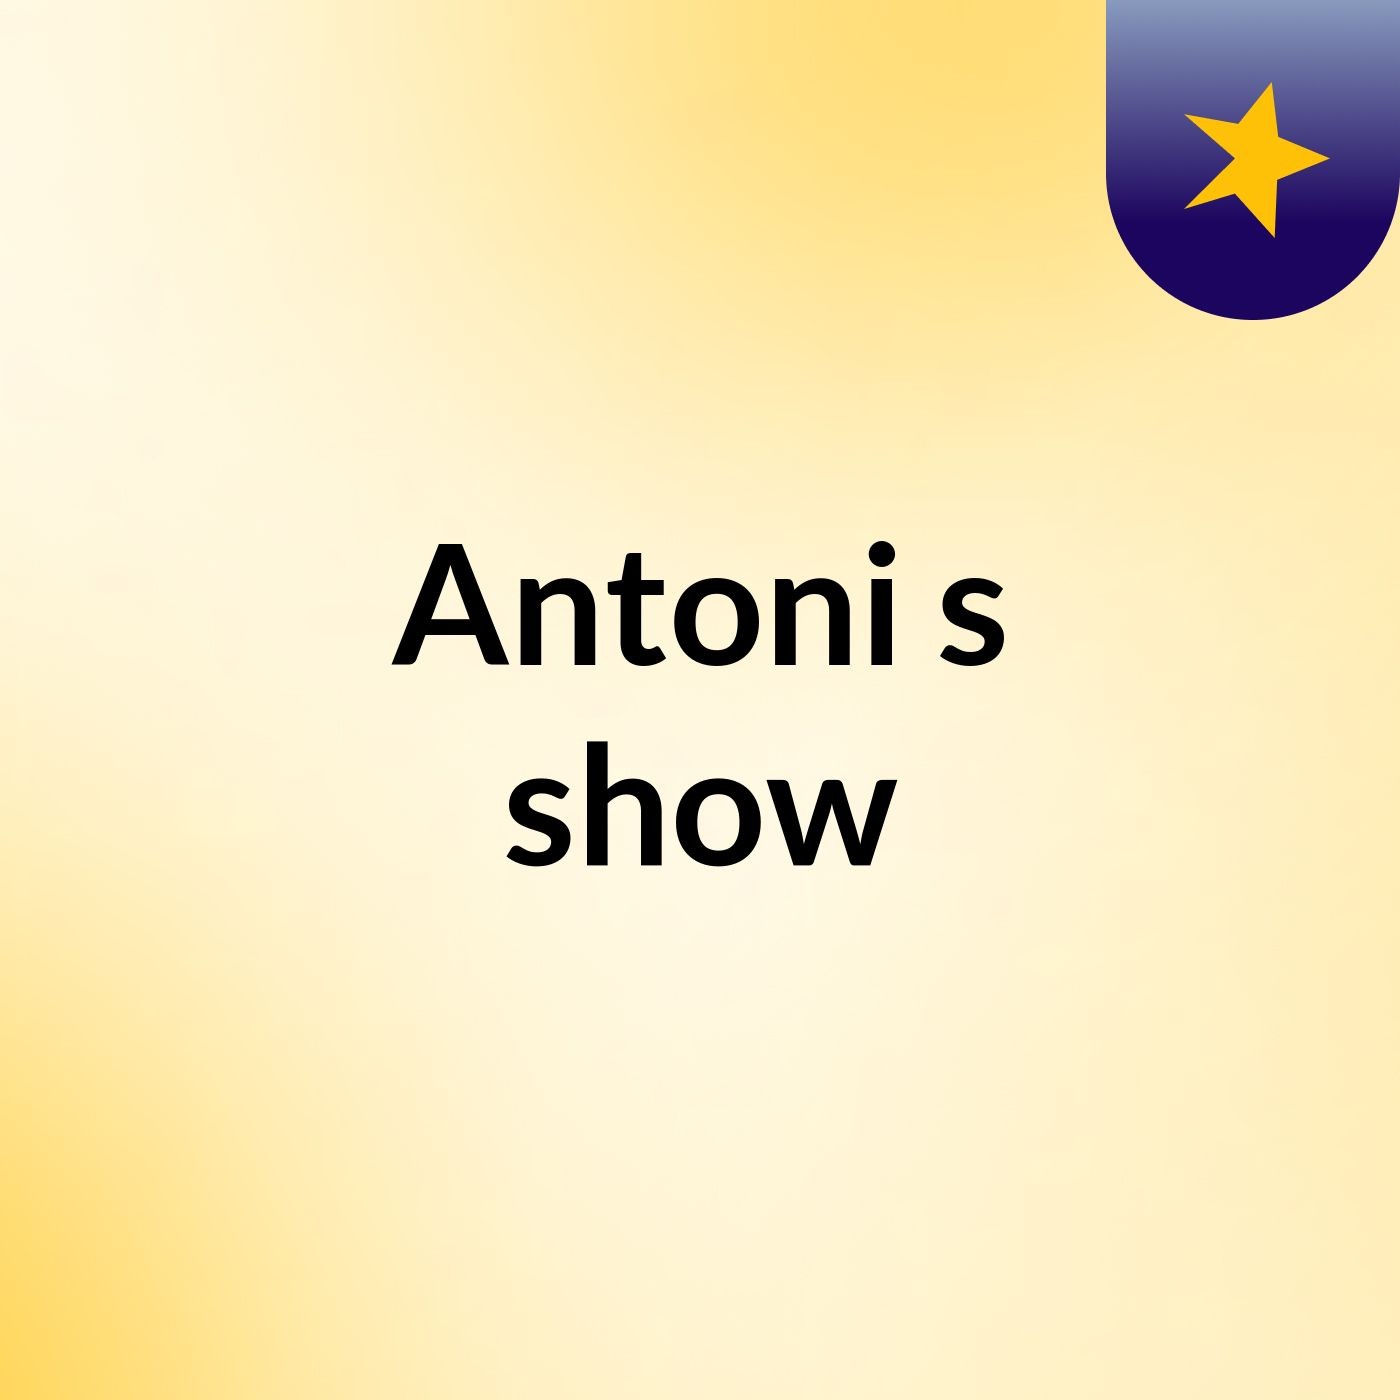 Antoni's show